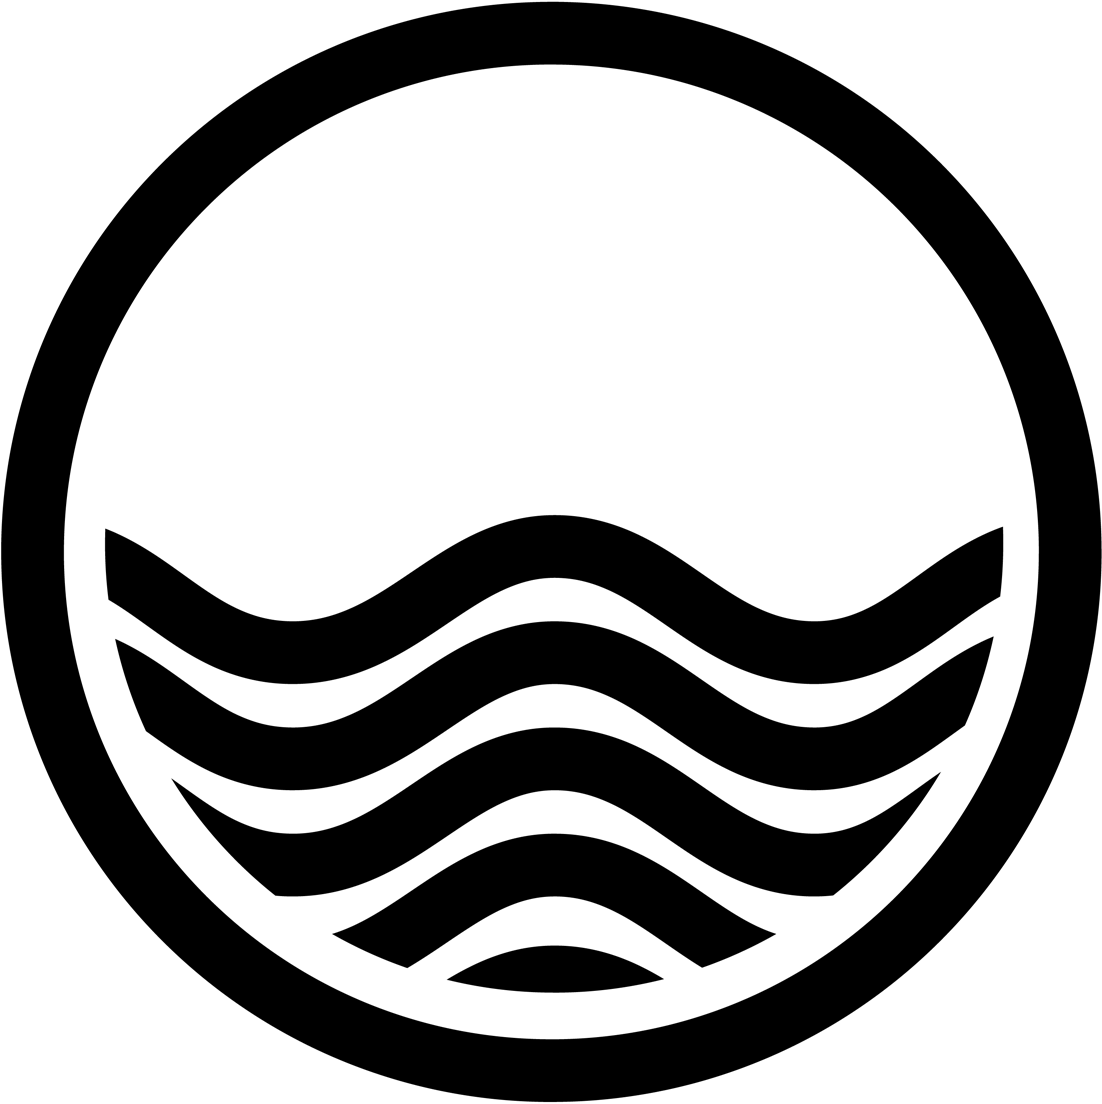 Tidal Wave Clip Art - Cliparts.co